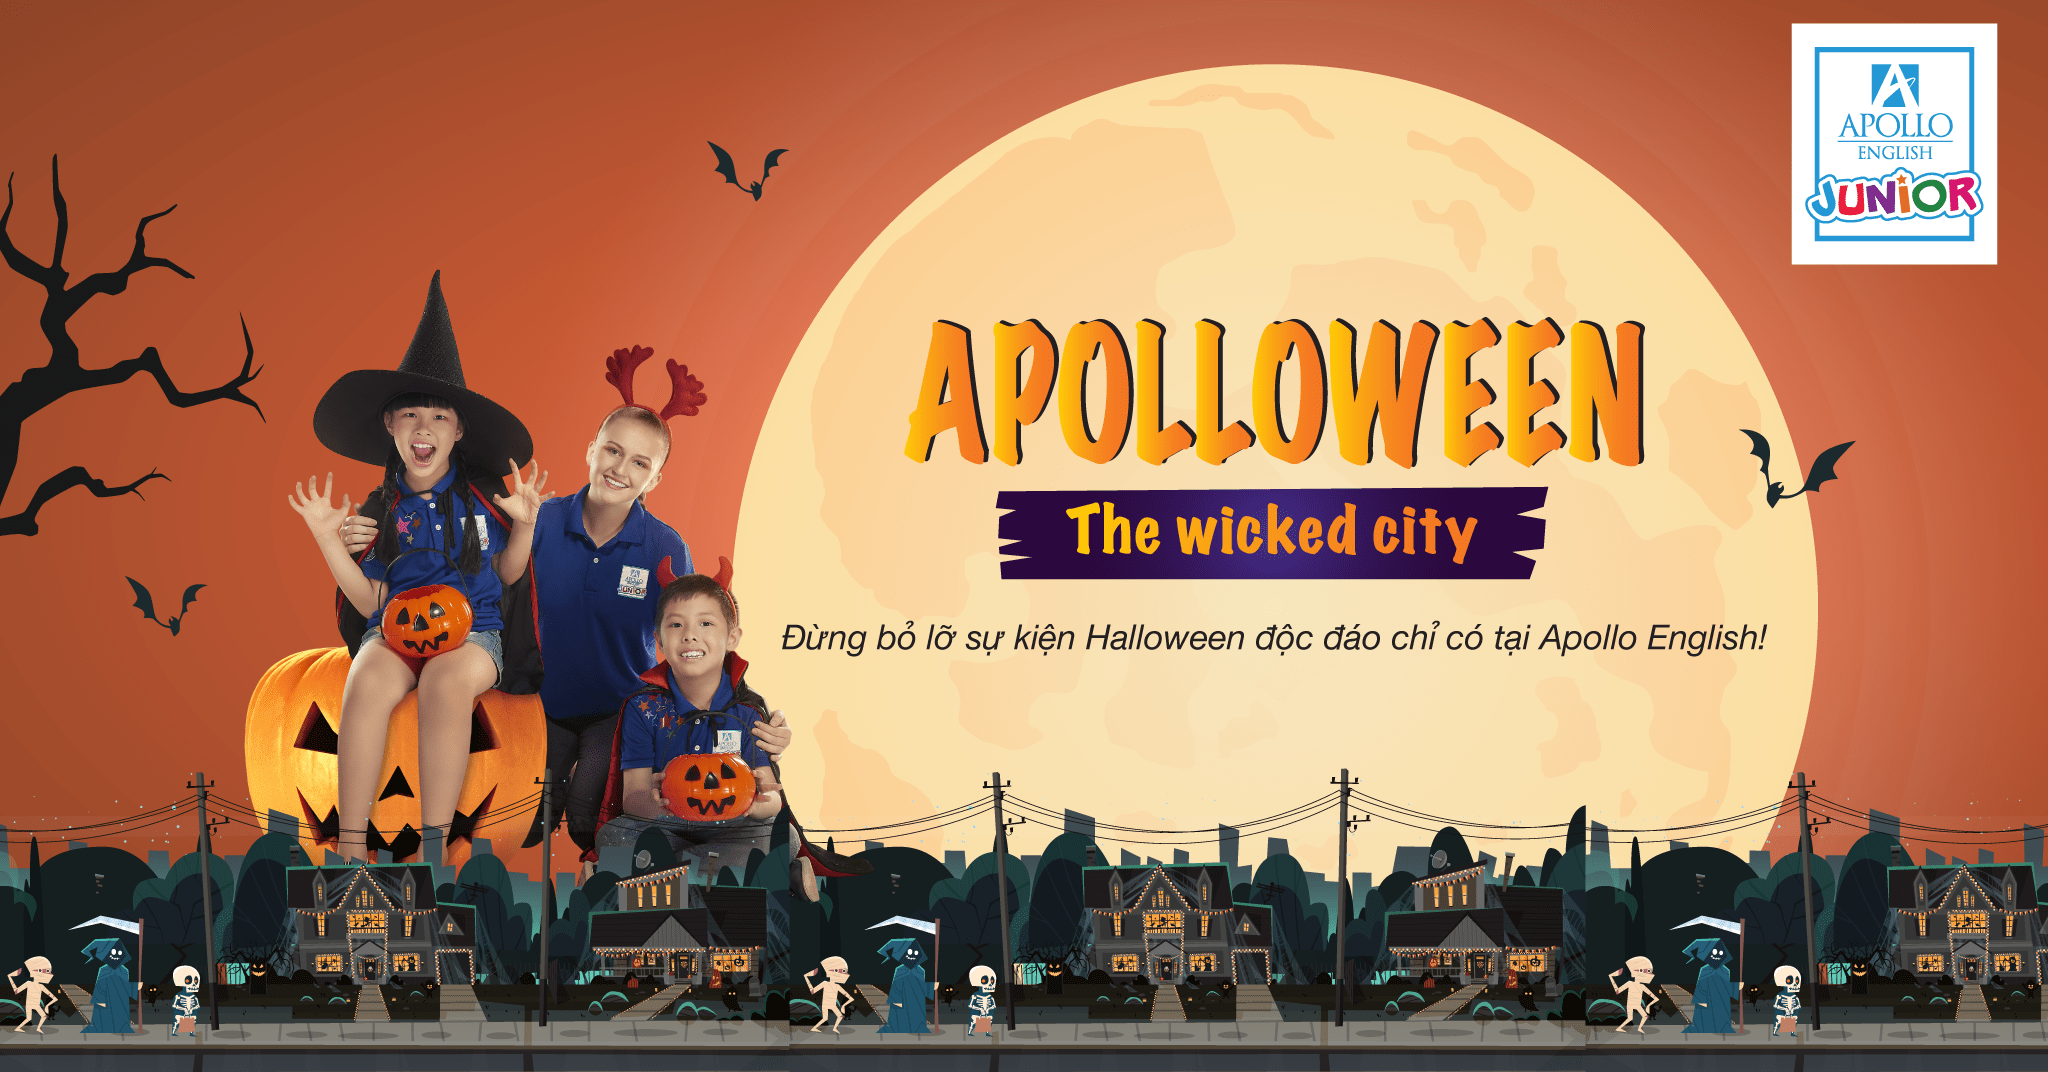 Apolloween - The wicked city, sự kiện độc đáo chỉ có tại Apollo English